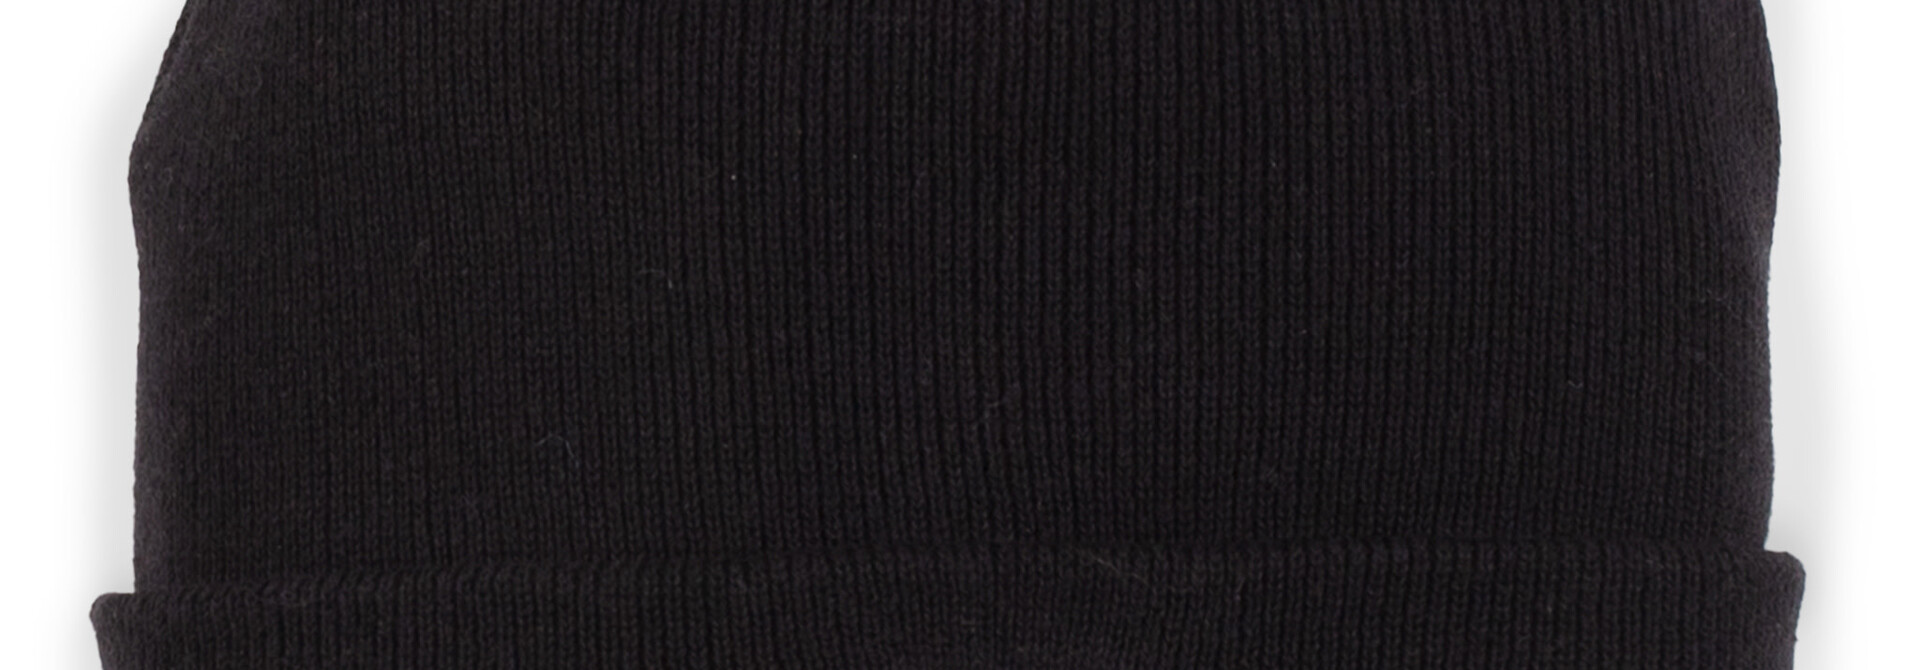 Tuque en tricot BASIC - F23 NOIR